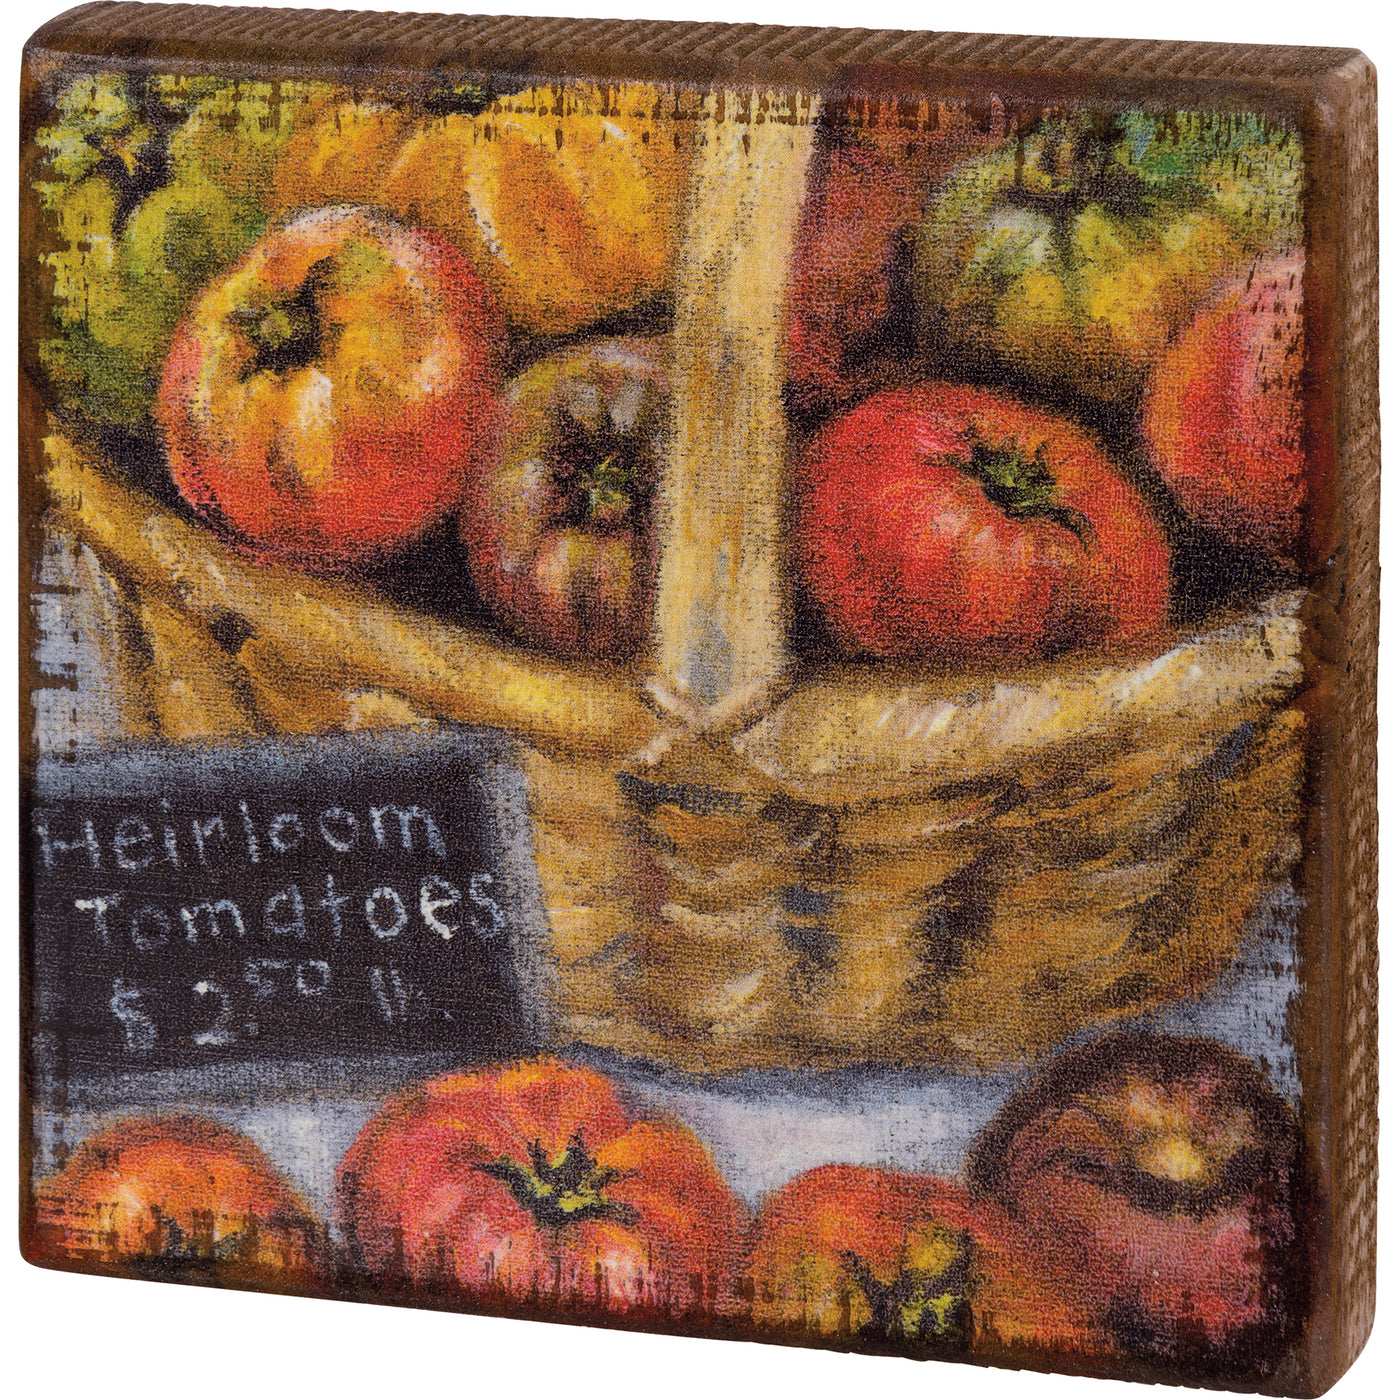 Basket of Heirloom Tomatoes Block Sign